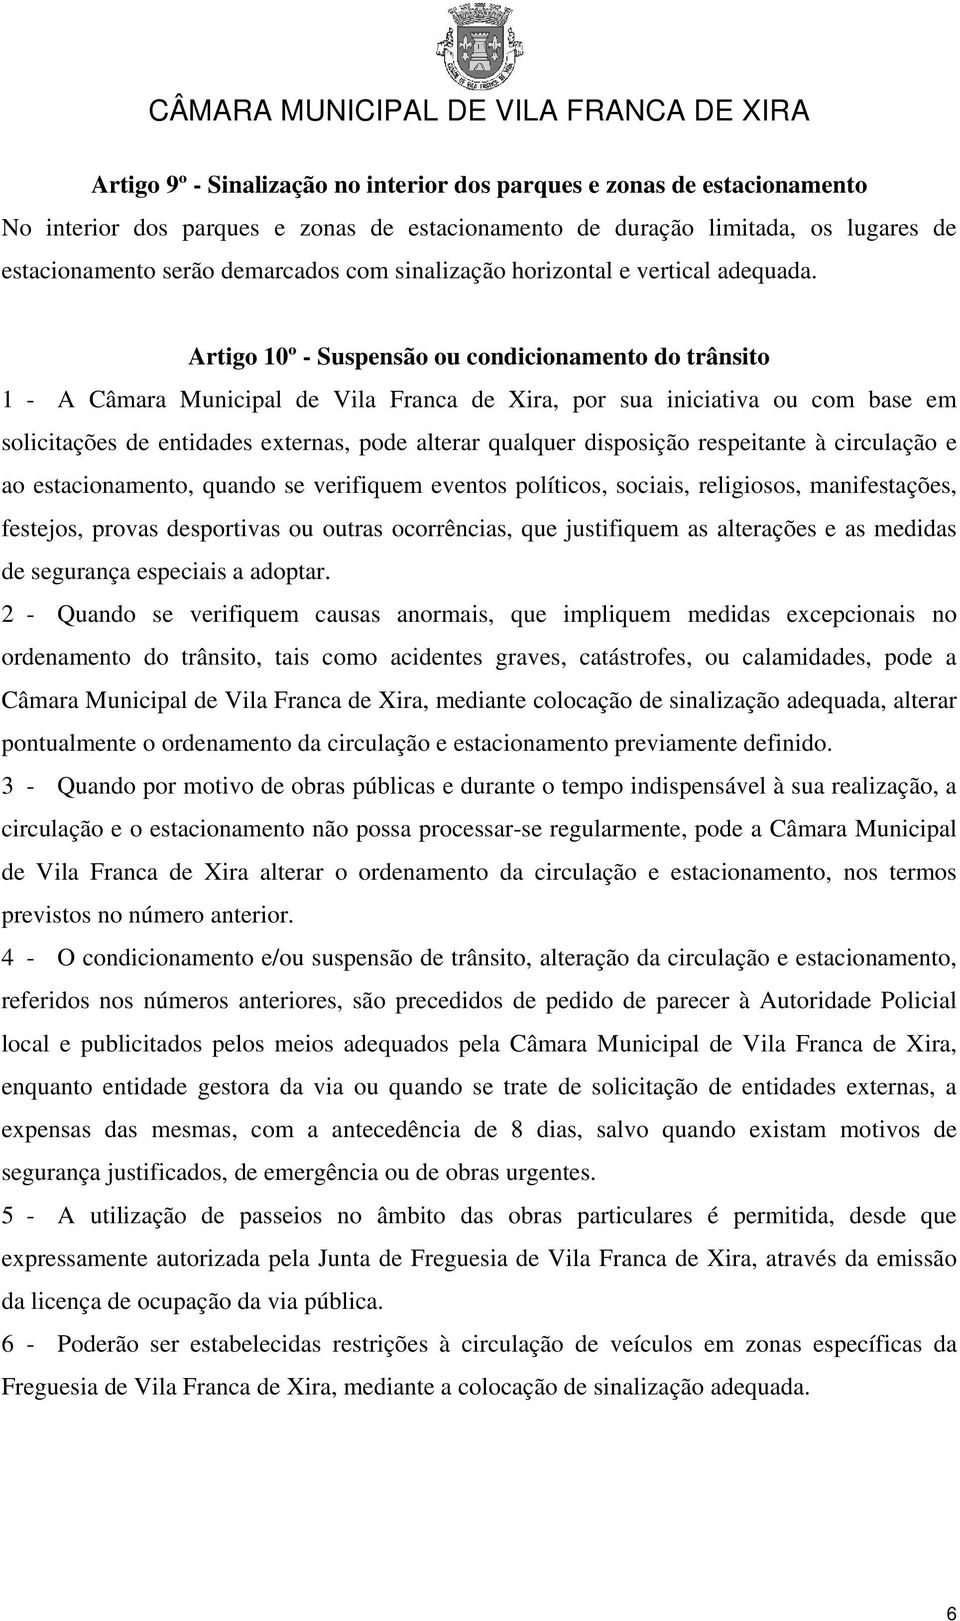 Artigo 10º - Suspensão ou condicionamento do trânsito 1 - A Câmara Municipal de Vila Franca de Xira, por sua iniciativa ou com base em solicitações de entidades externas, pode alterar qualquer